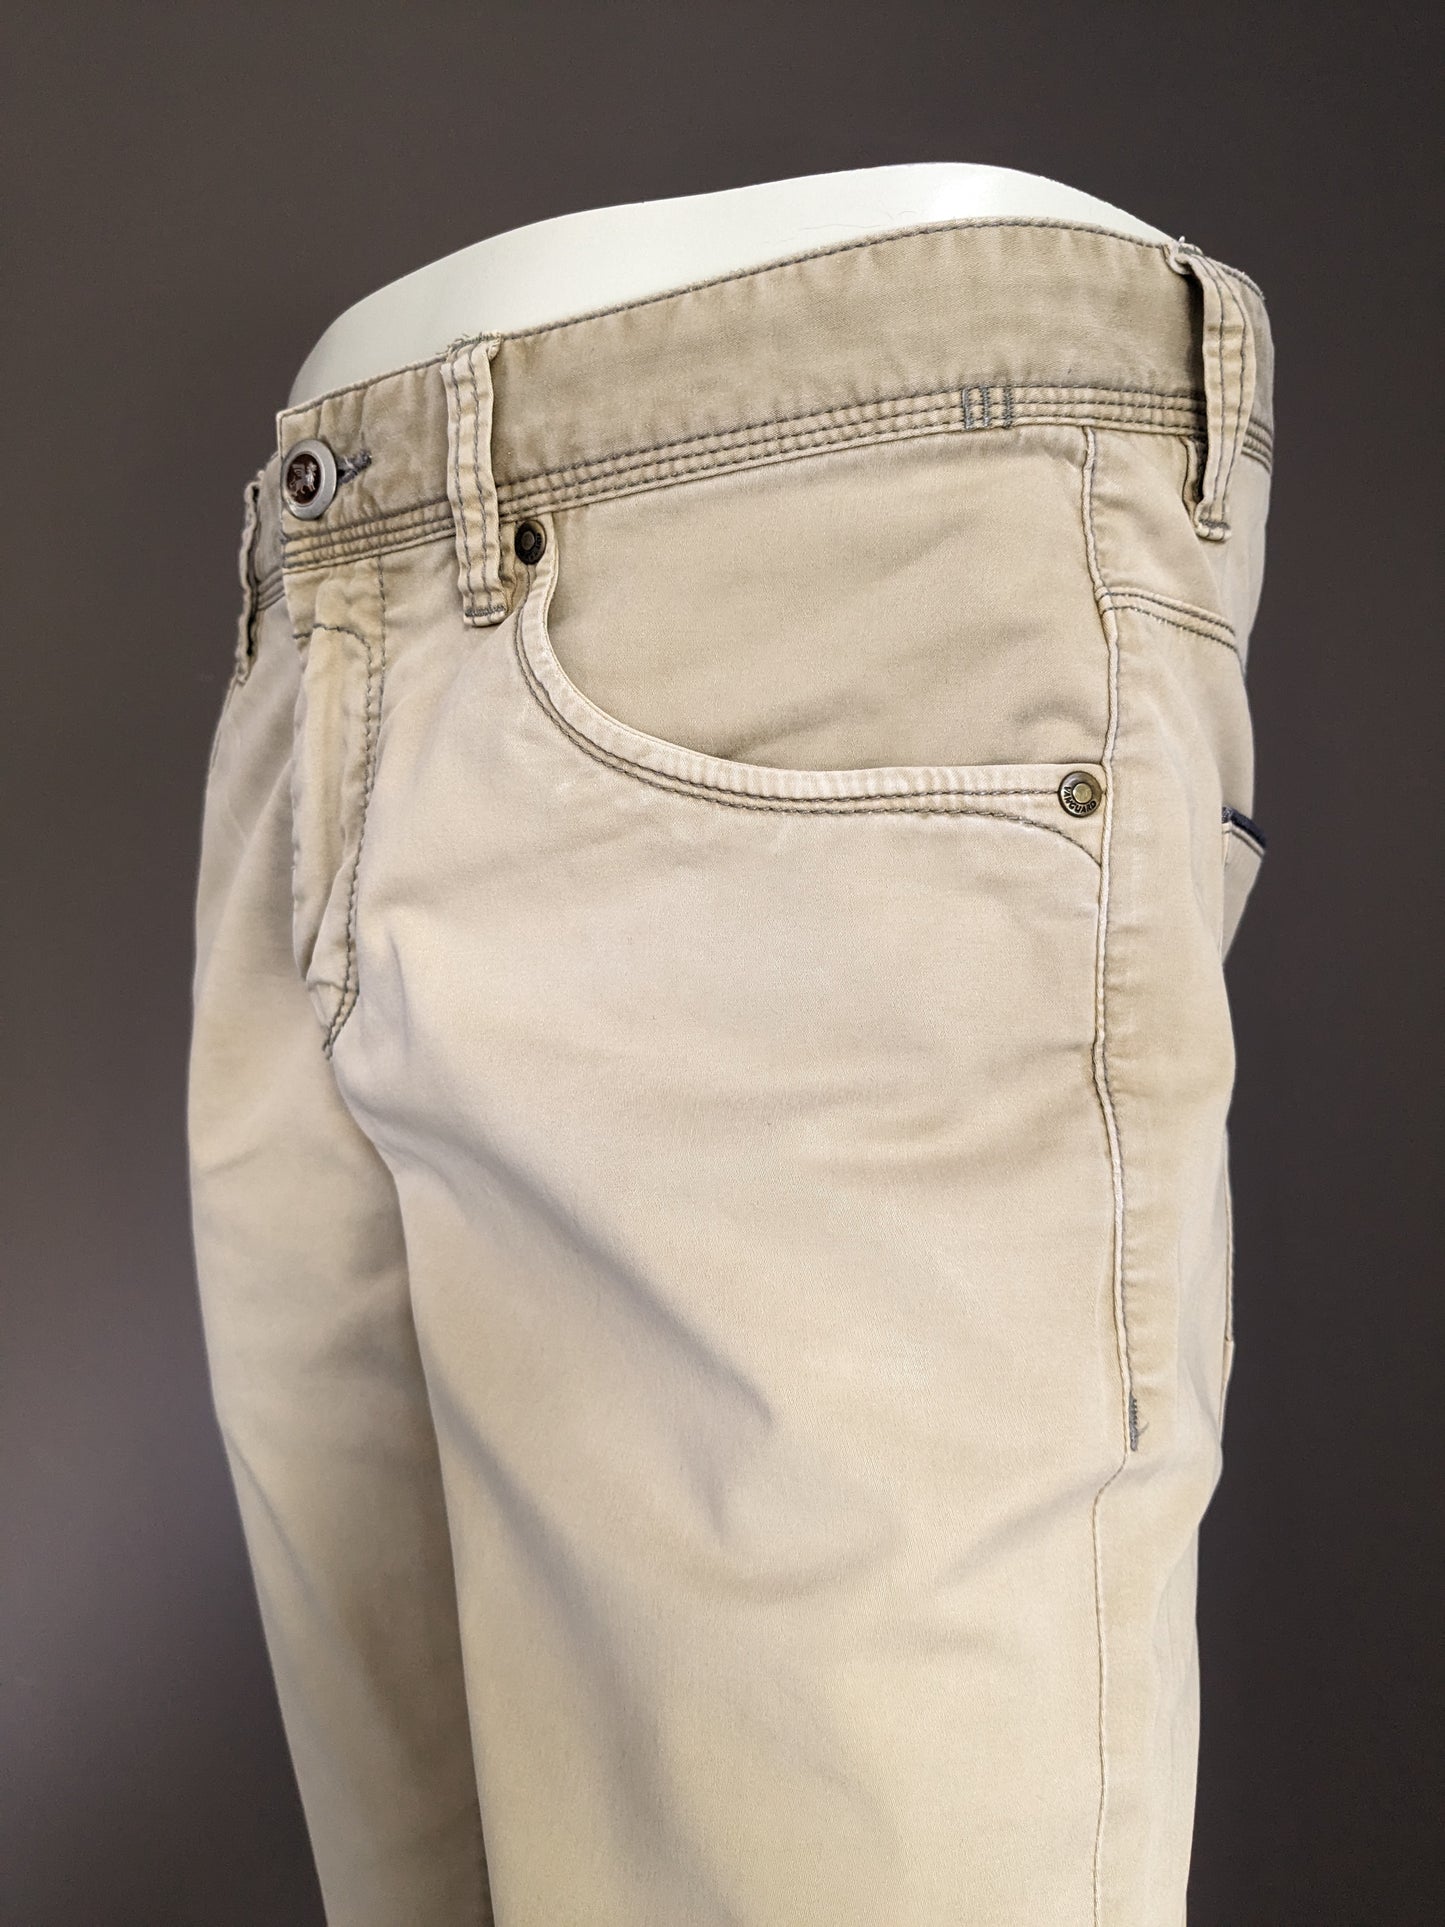 Pantalon Vanguard. Coloré beige. Taille W31 - L32.